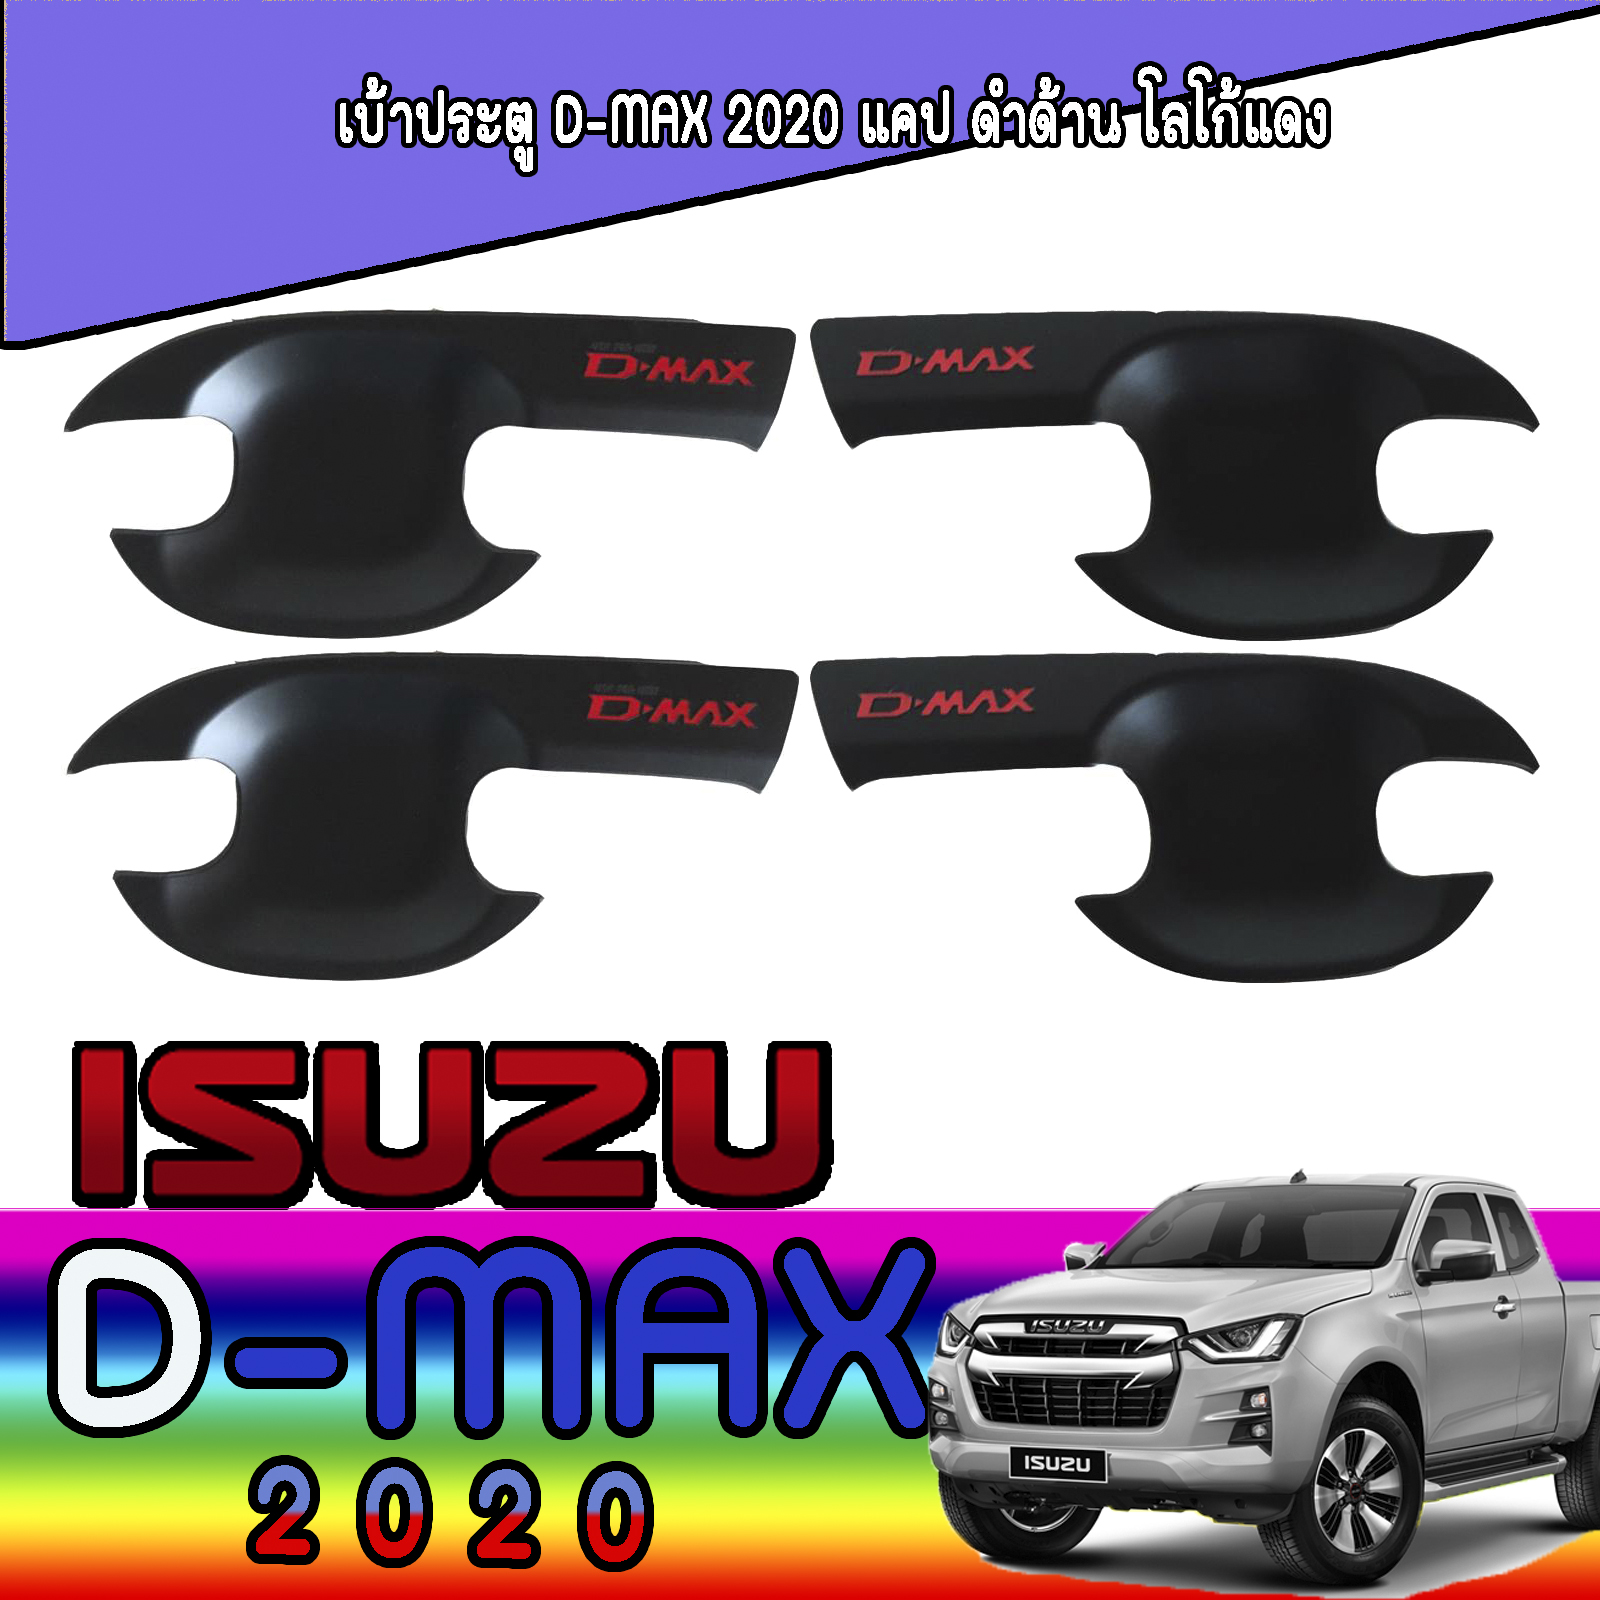 เบ้ารองมือเปิด 2 ประตู ดำด้าน+โลโก้แดง ดีแม็ก ดีแม็กซ์ ISUZU DMAX  อีซูซุ ดีแมค ISUZU D-max 2020 A